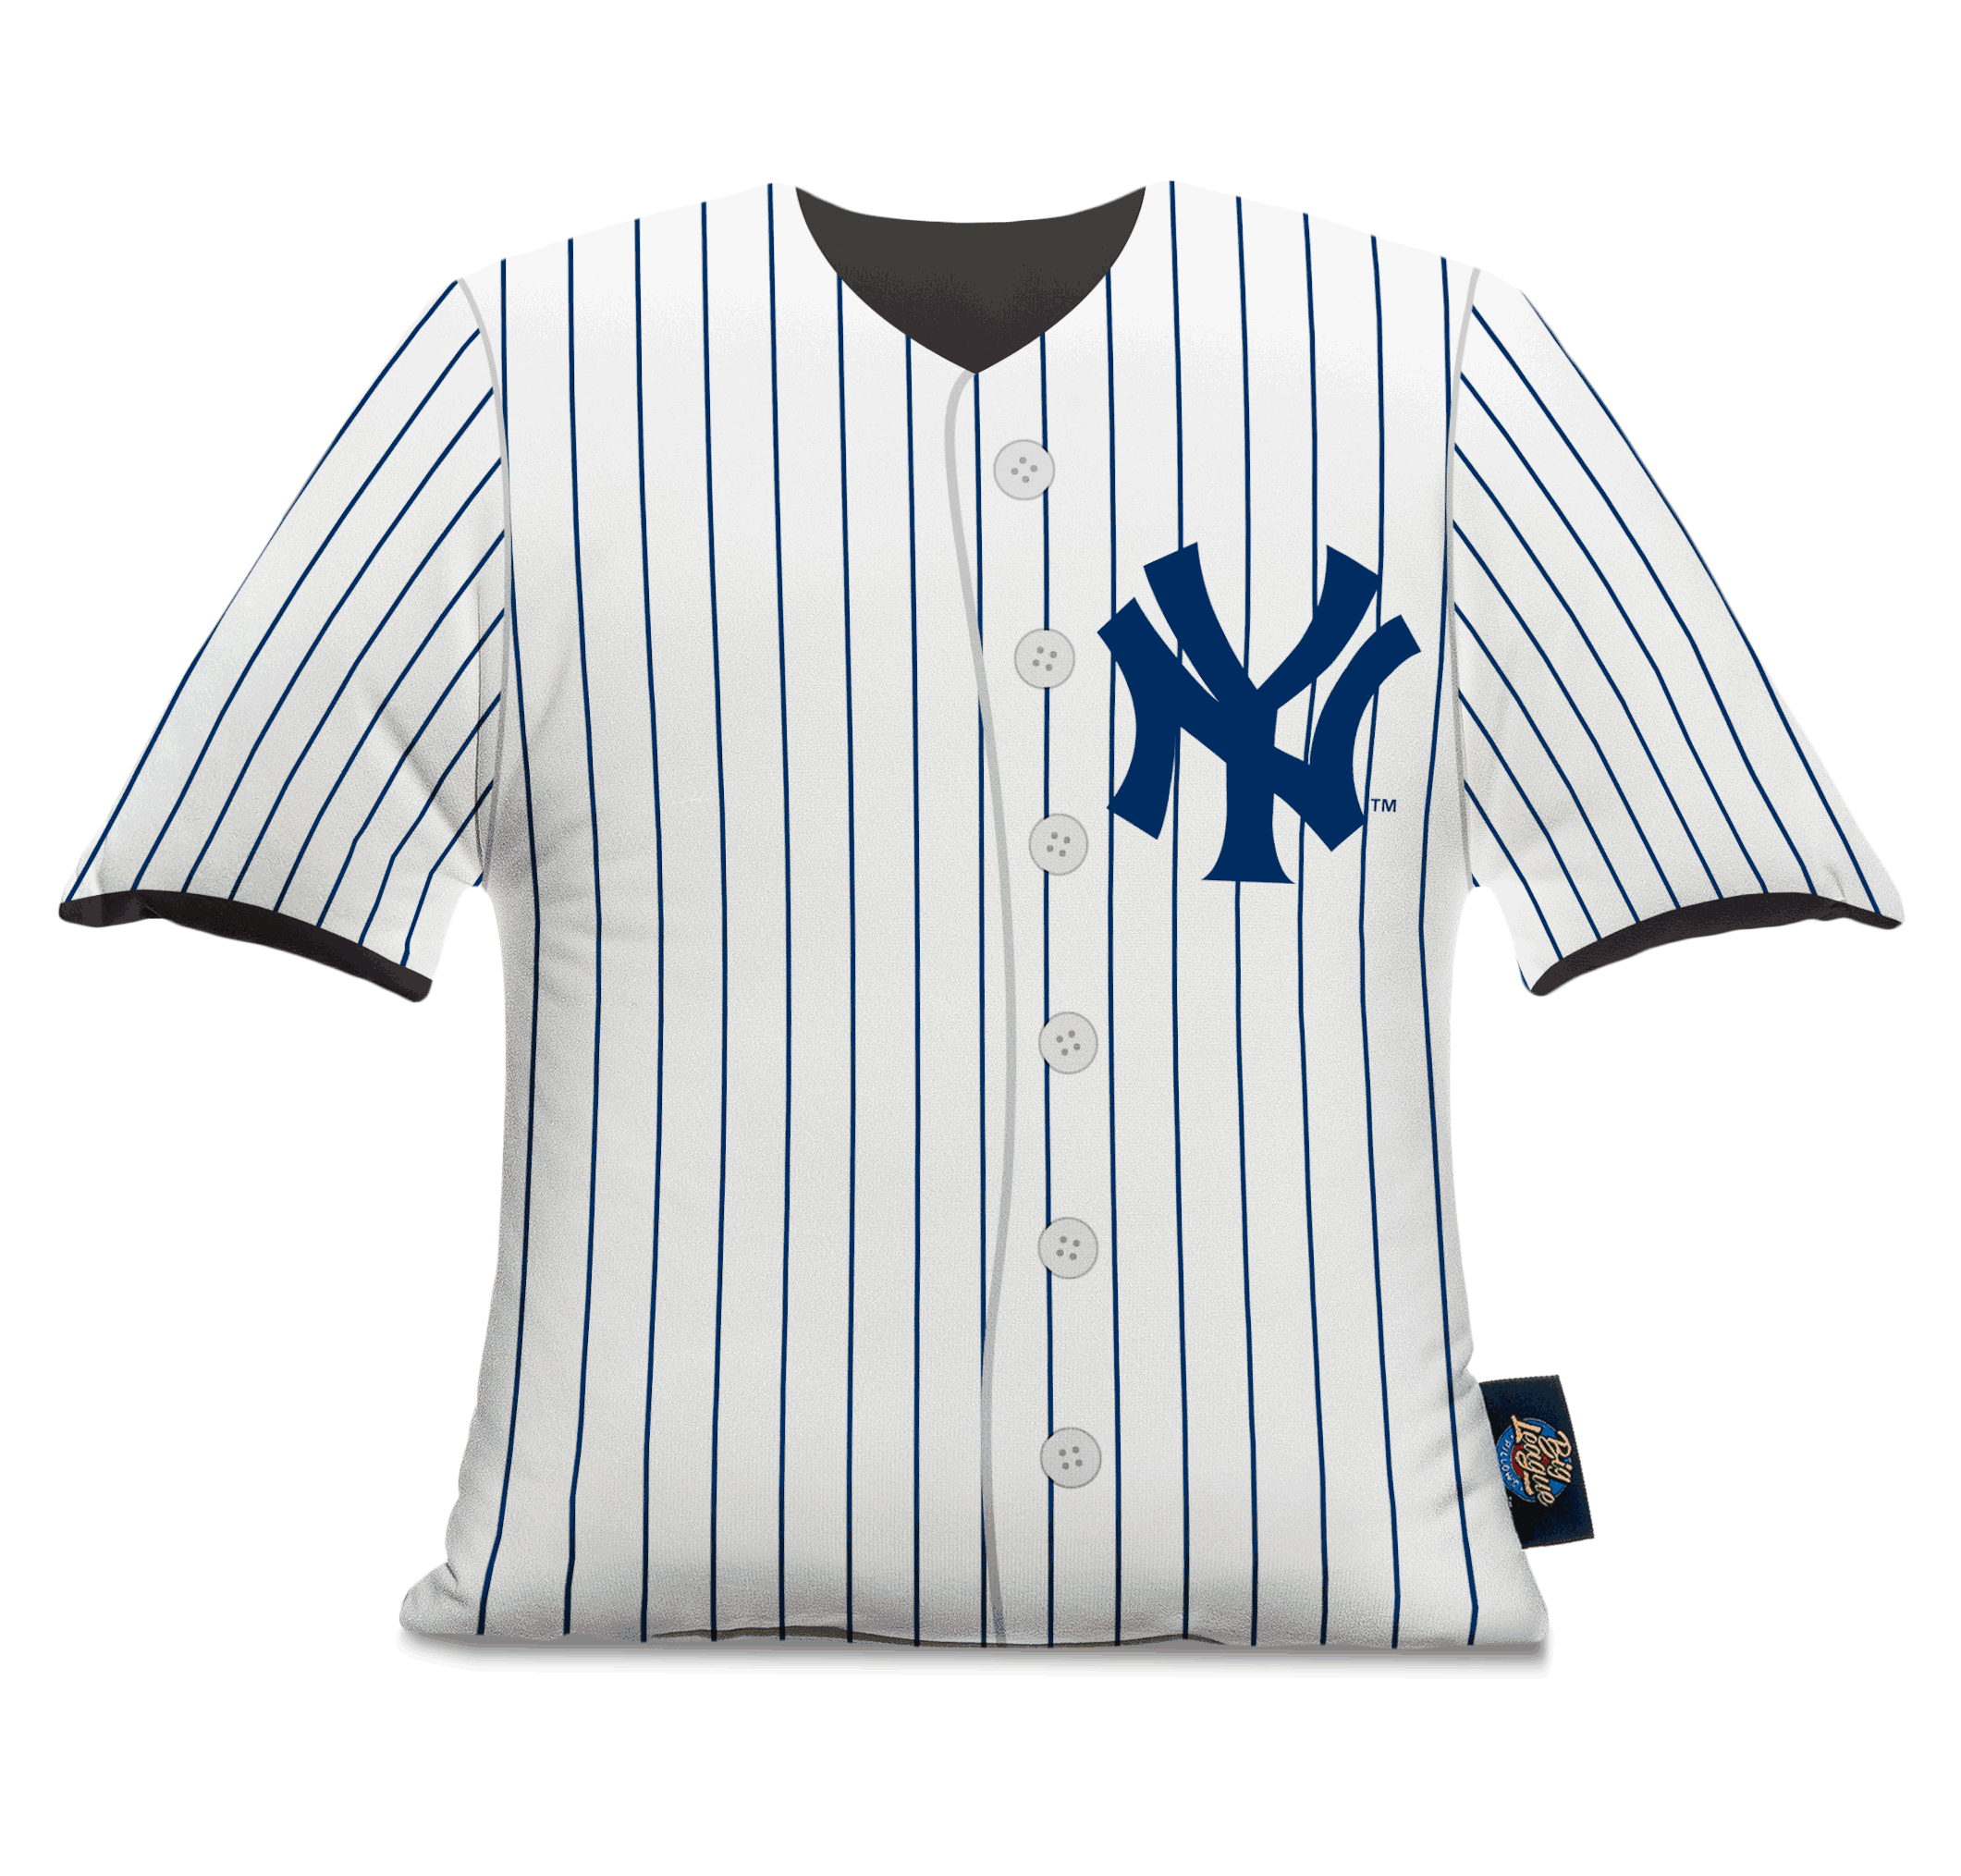 MLB jersey customization